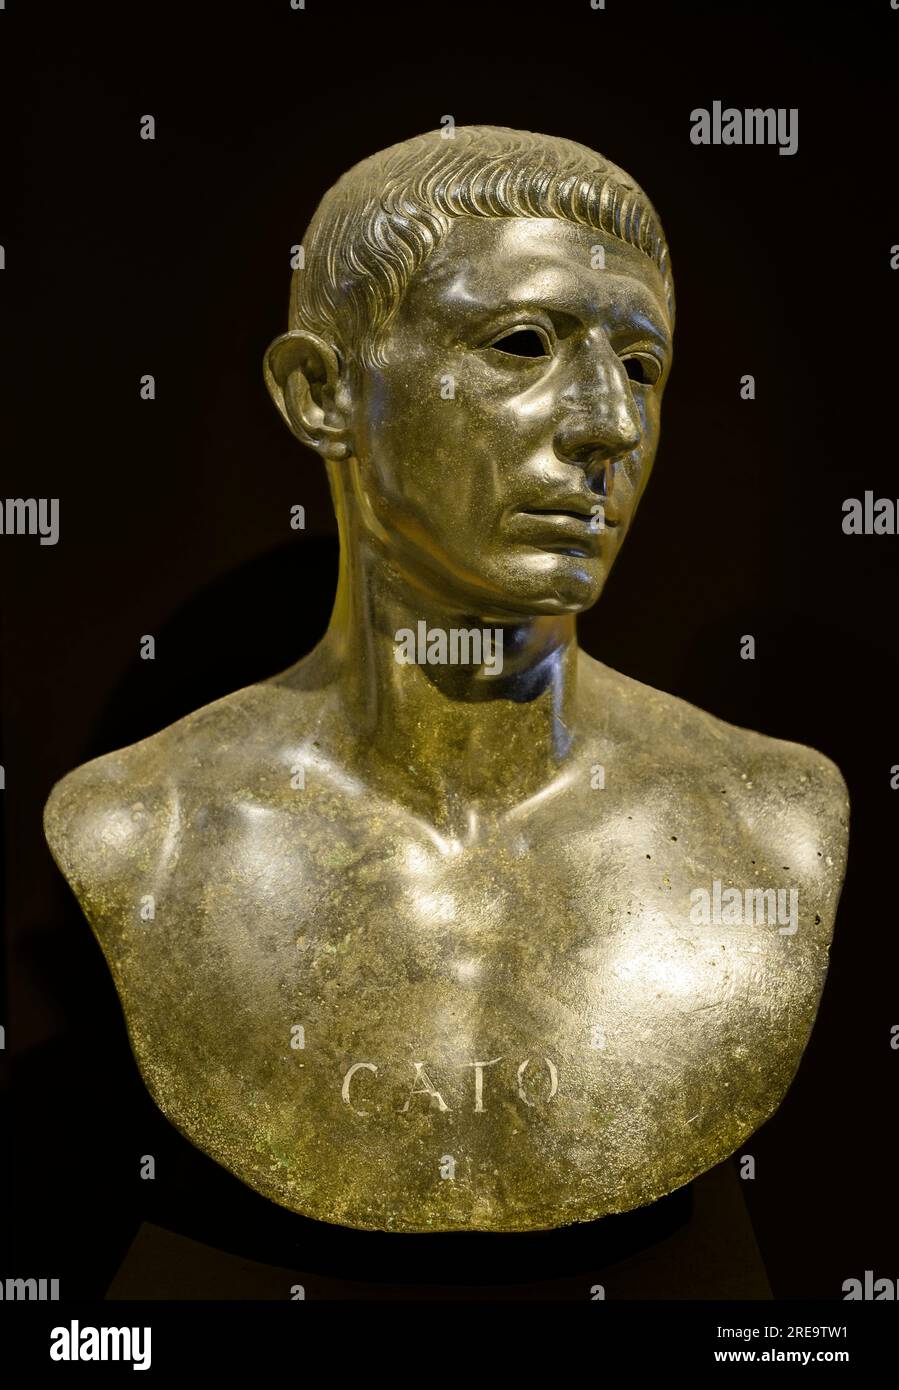 Bronze portrait bust of Cato probably Cato Uticensis - Cato the Younger, Late rebublic Roman Senator,  frorm Volubilis in Marocco. 1st century AD.  Mu Stock Photo